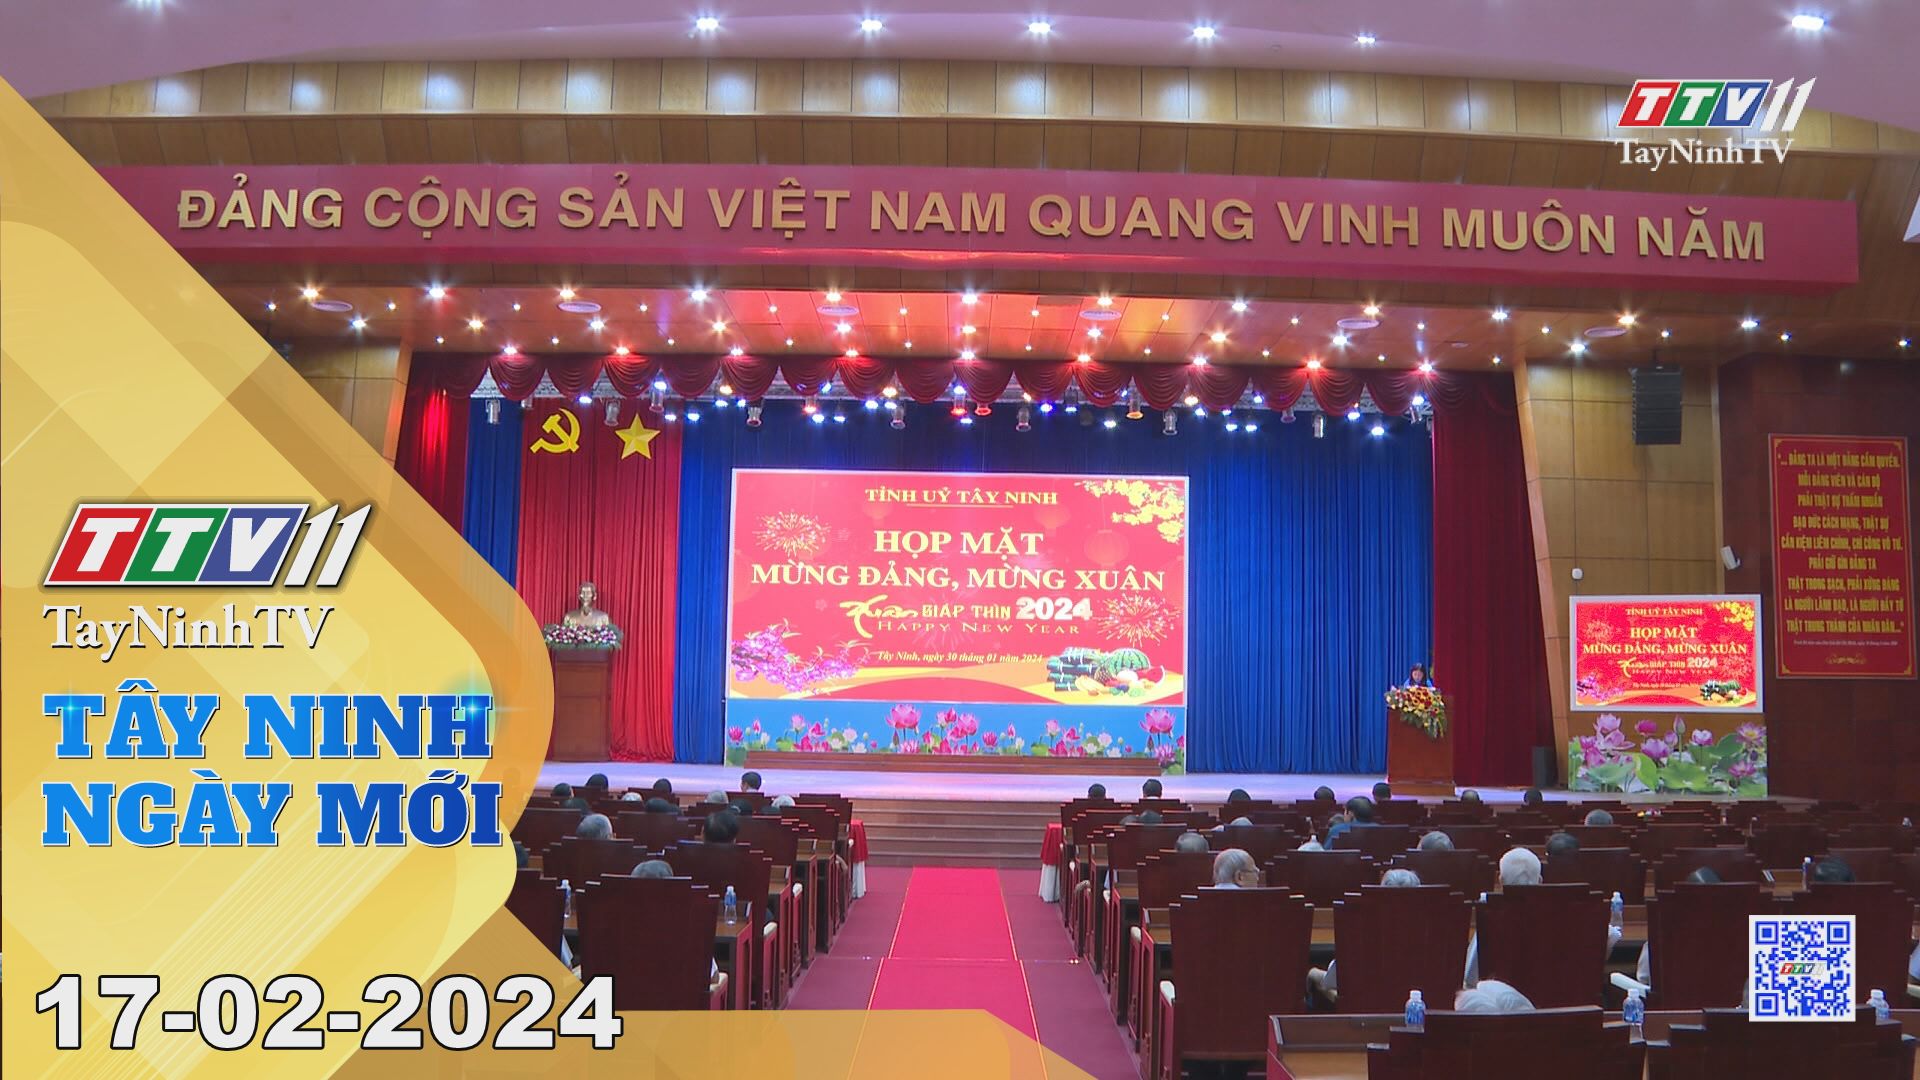 Tây Ninh ngày mới 17-02-2024 | Tin tức hôm nay | TayNinhTV